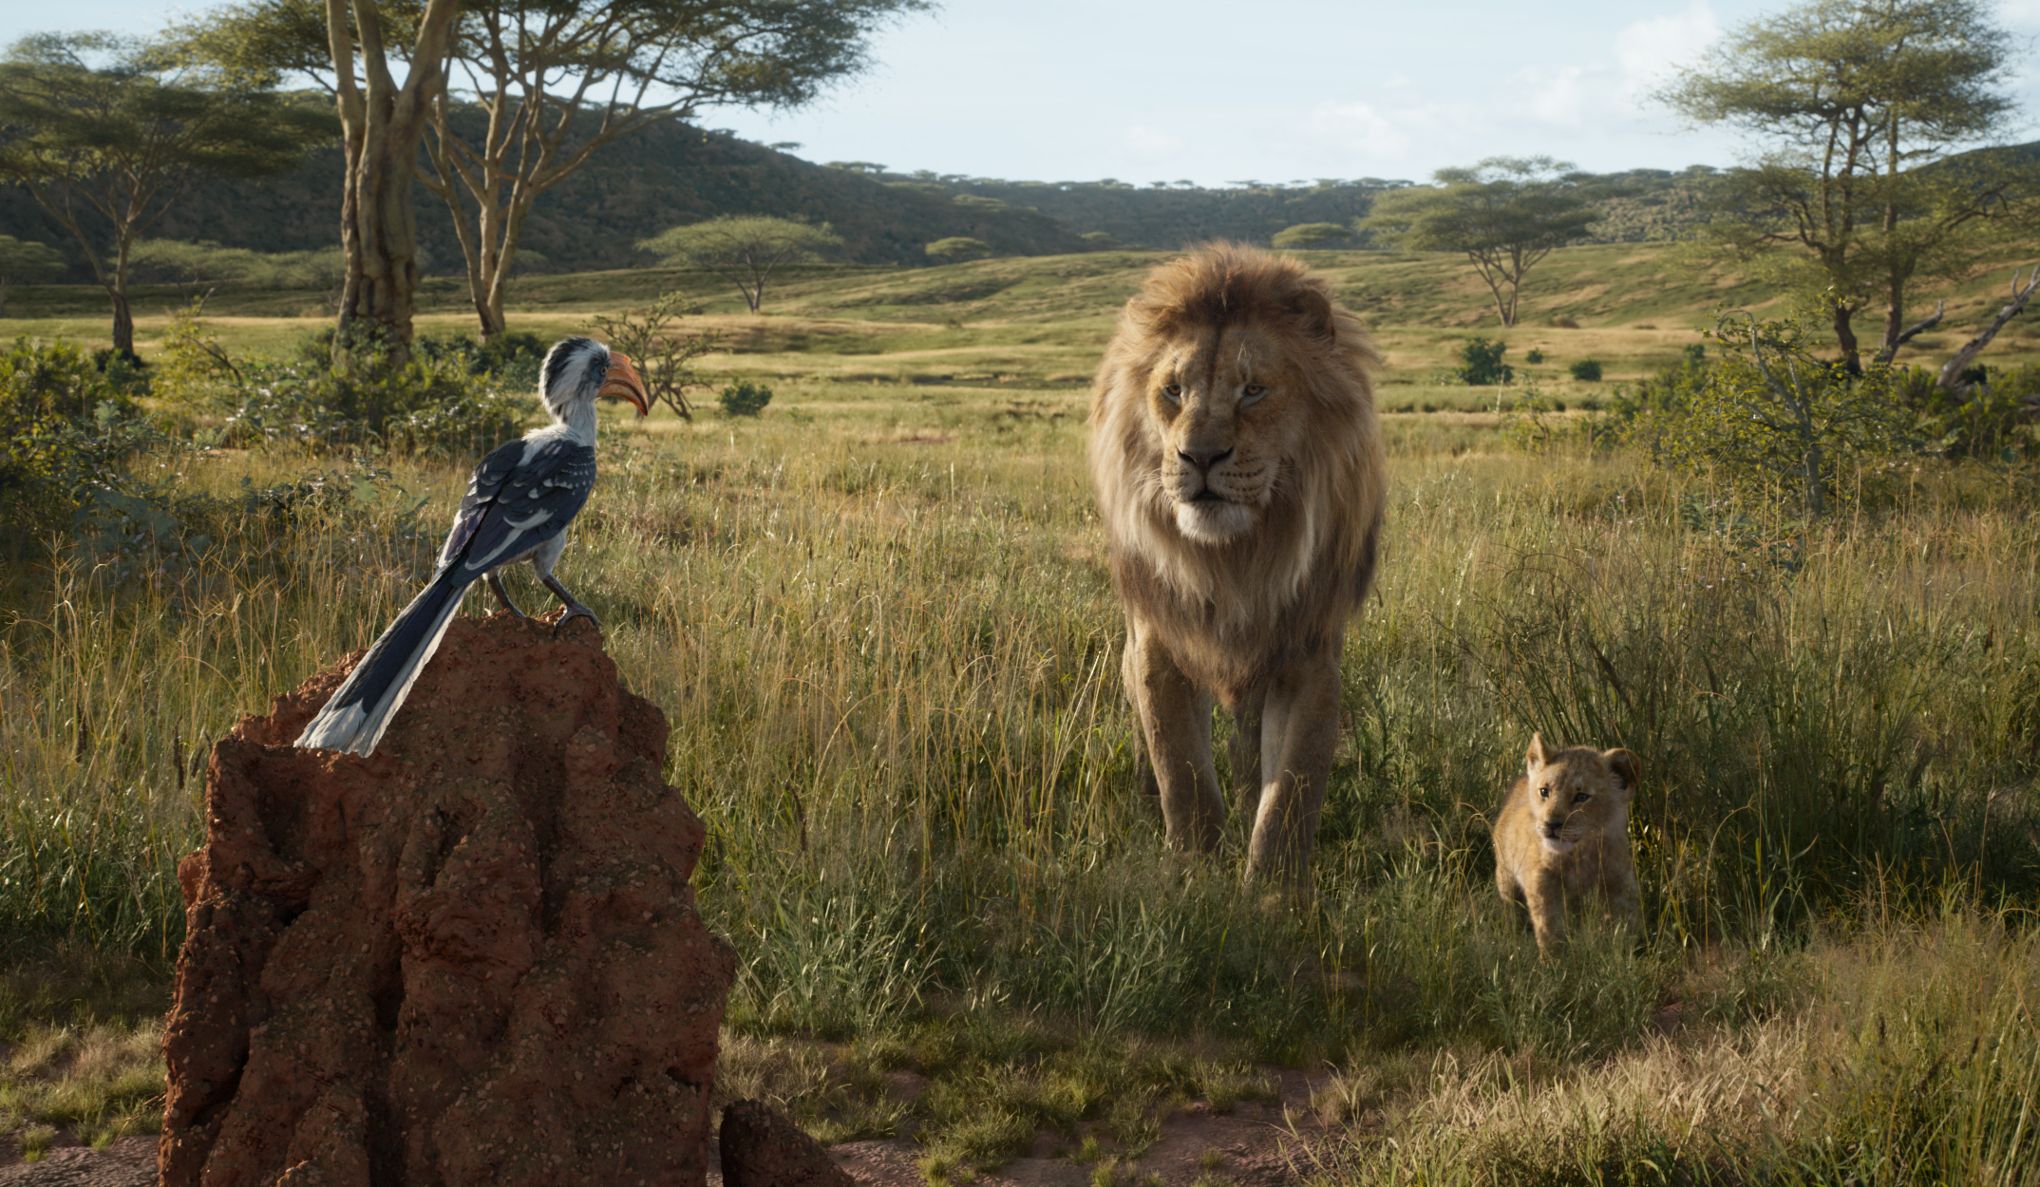 Le roi Lion» en photoréalisme: beau, mais sans frissons